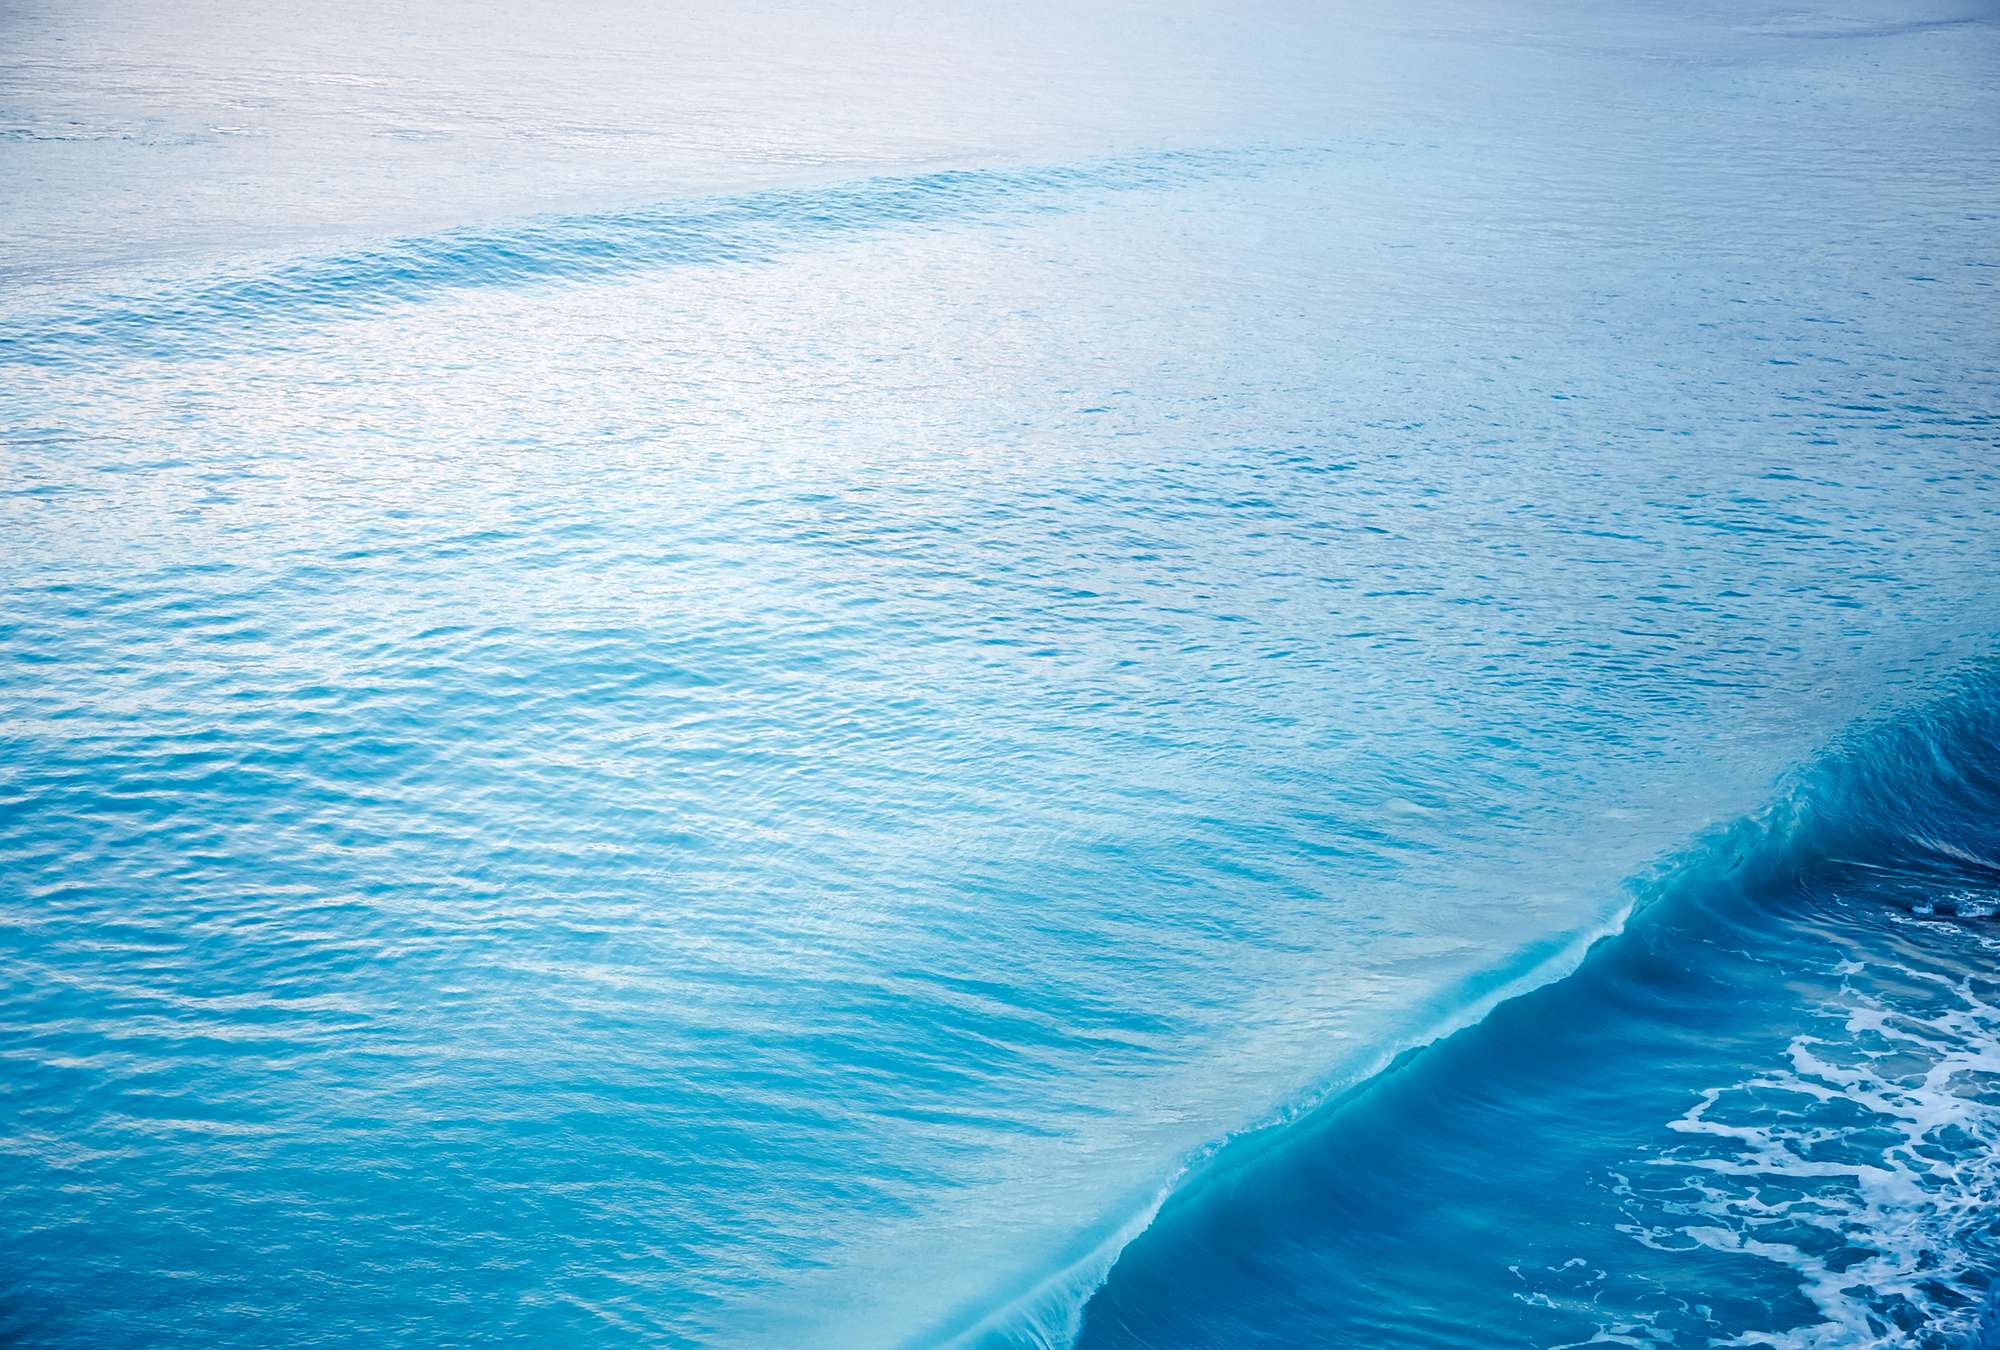             Mural de una ola rompiendo en el mar
        